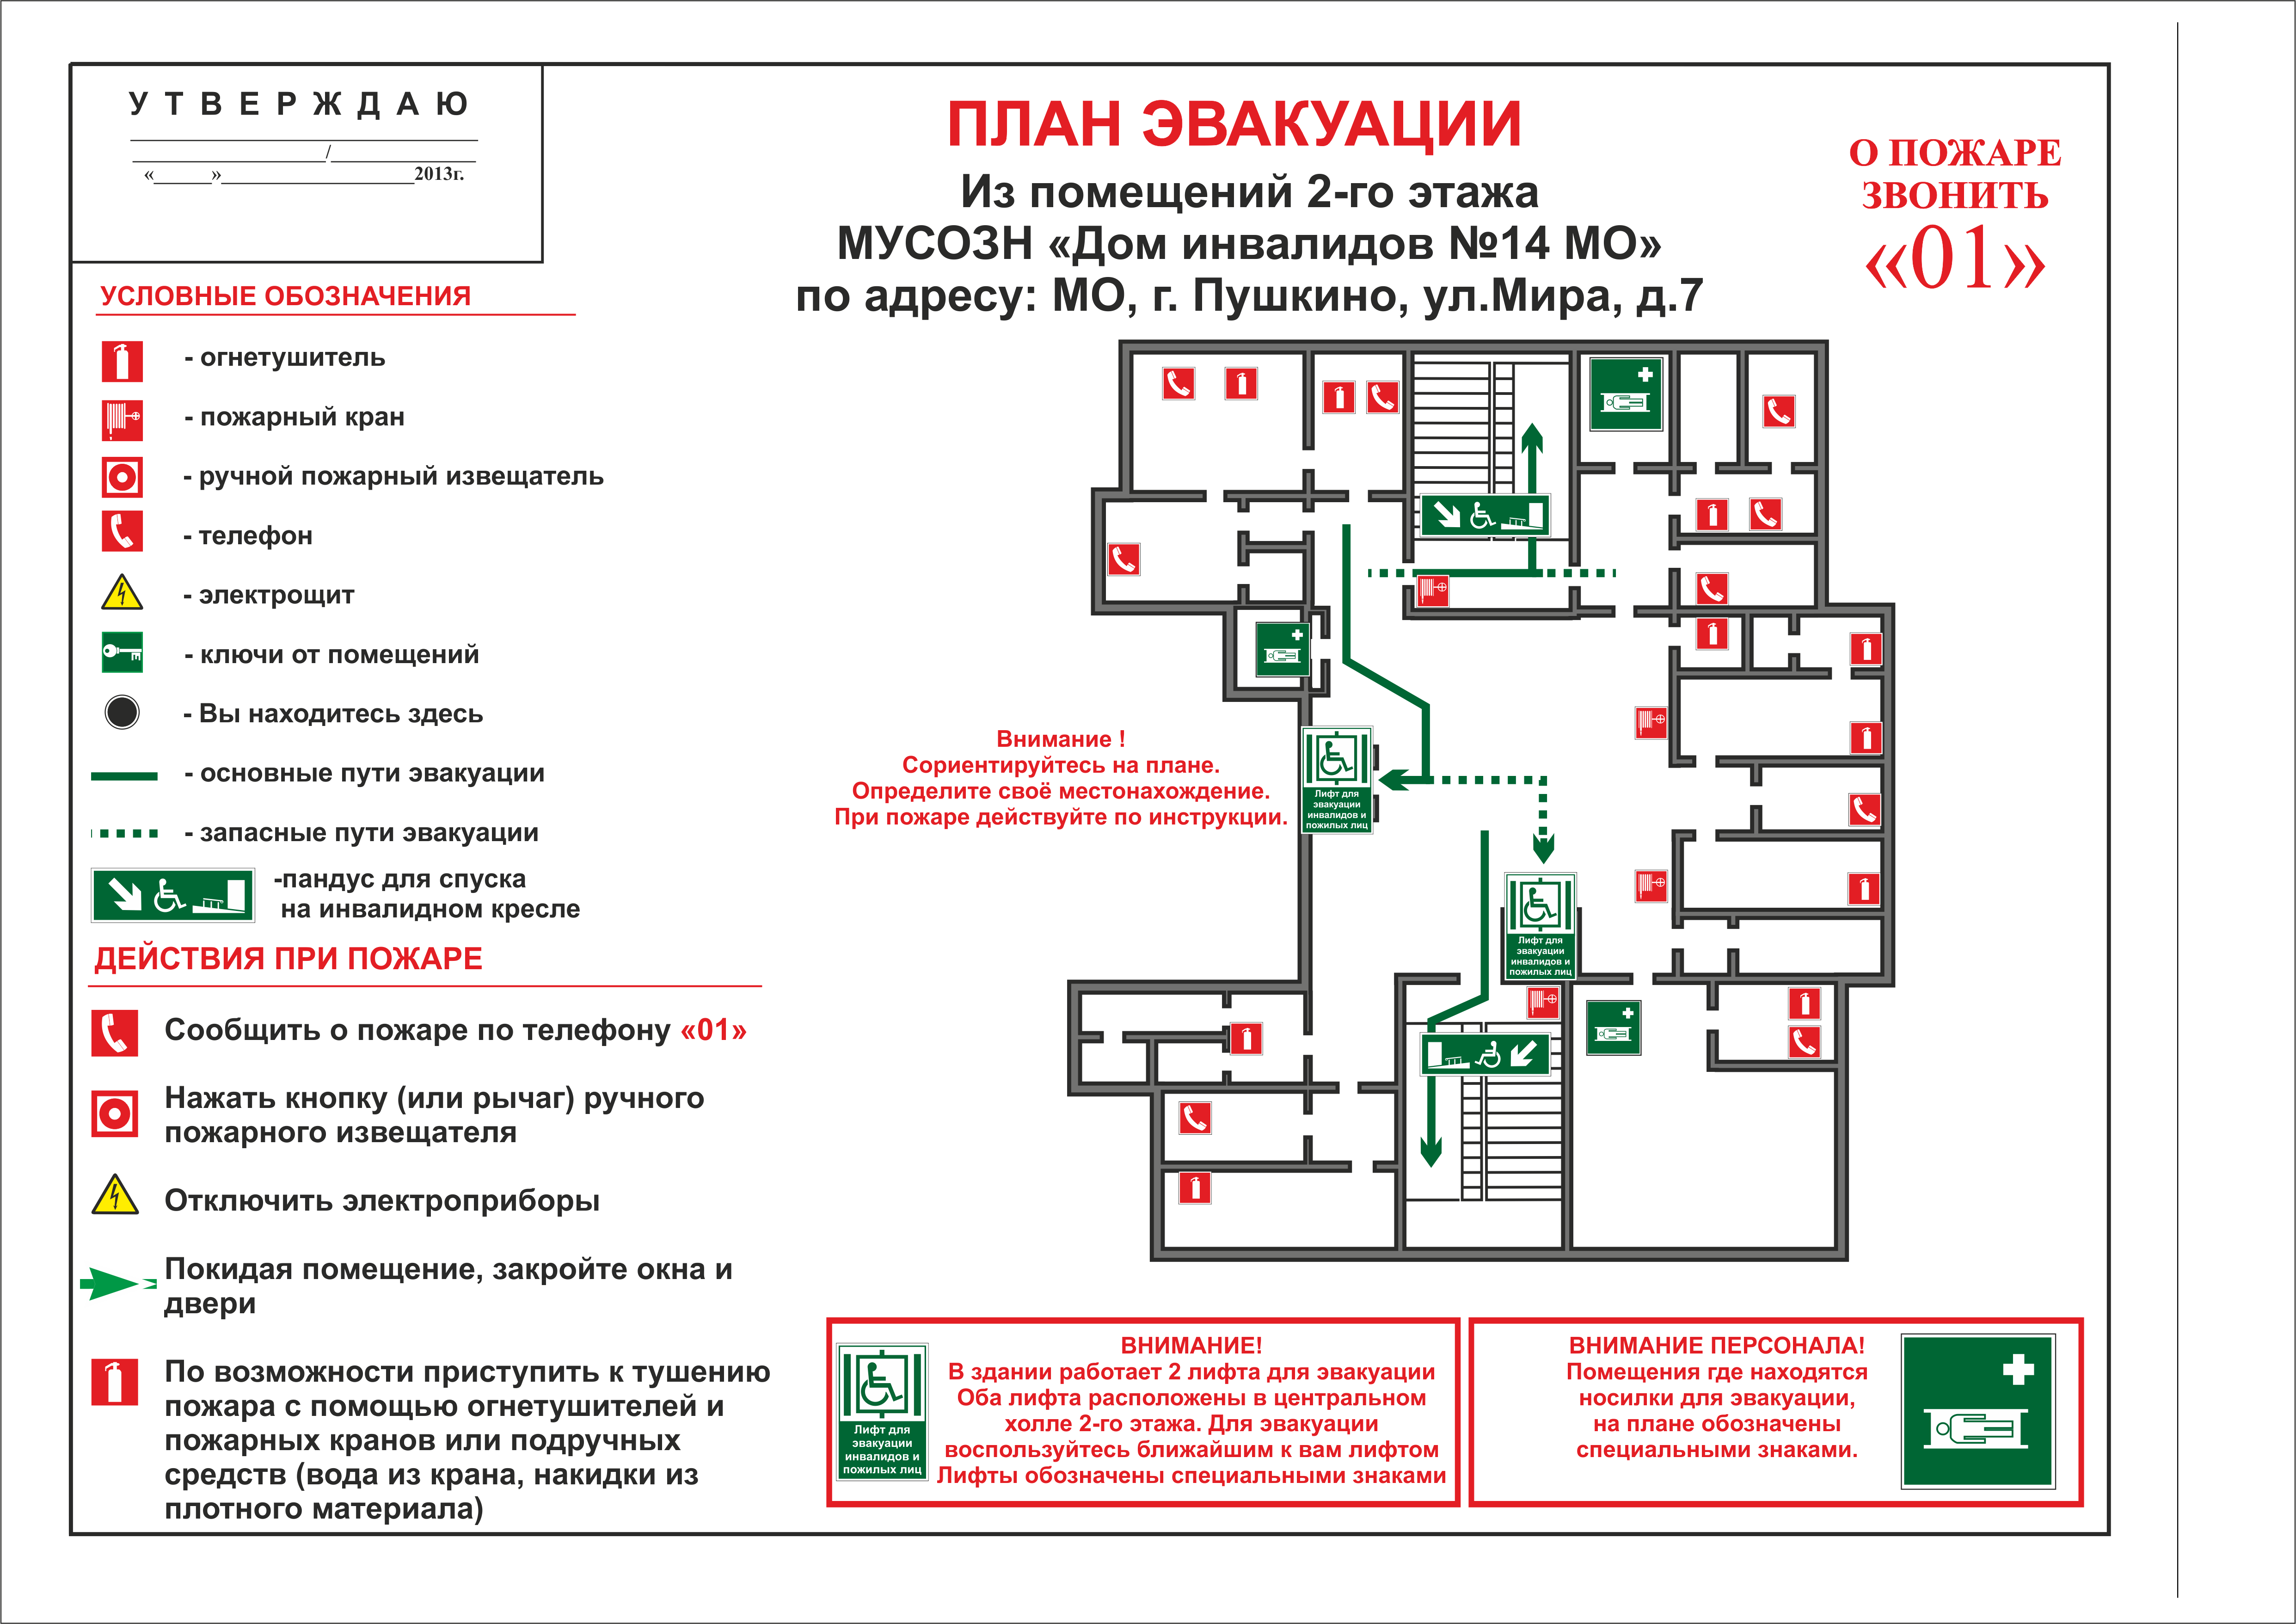 Инструкция по пожарной безопасности в поликлинике